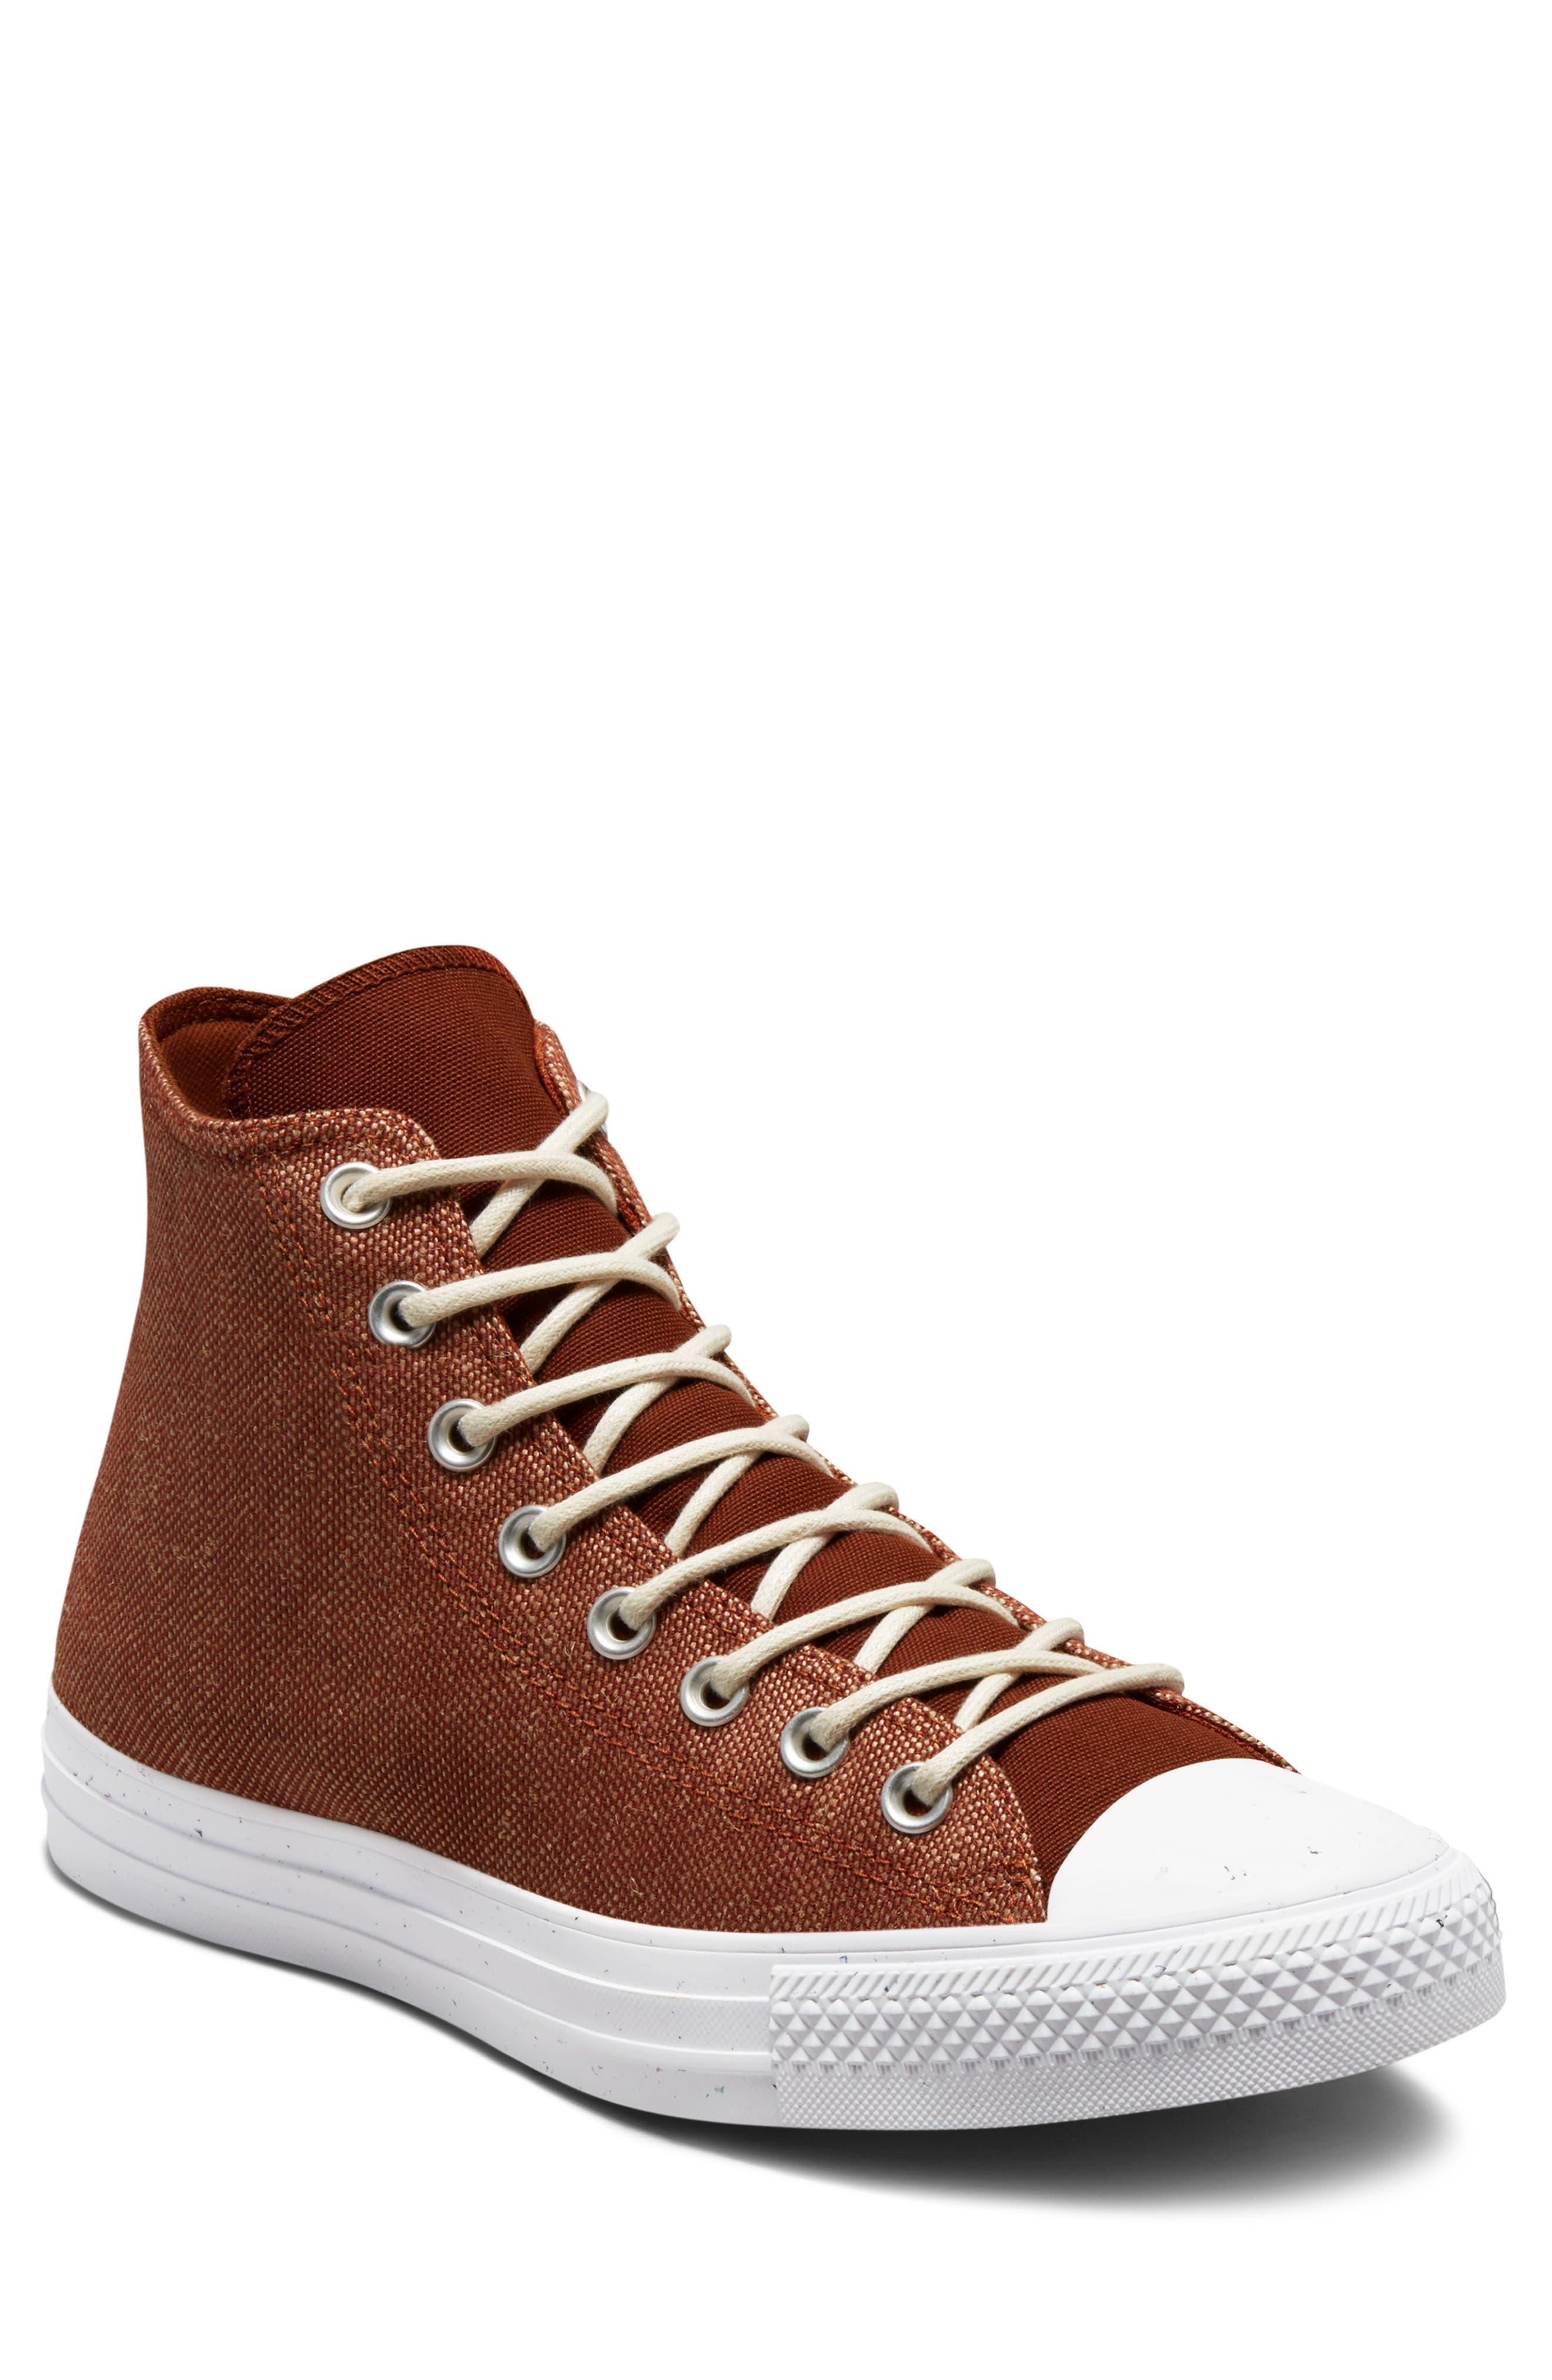 brown converse sneakers